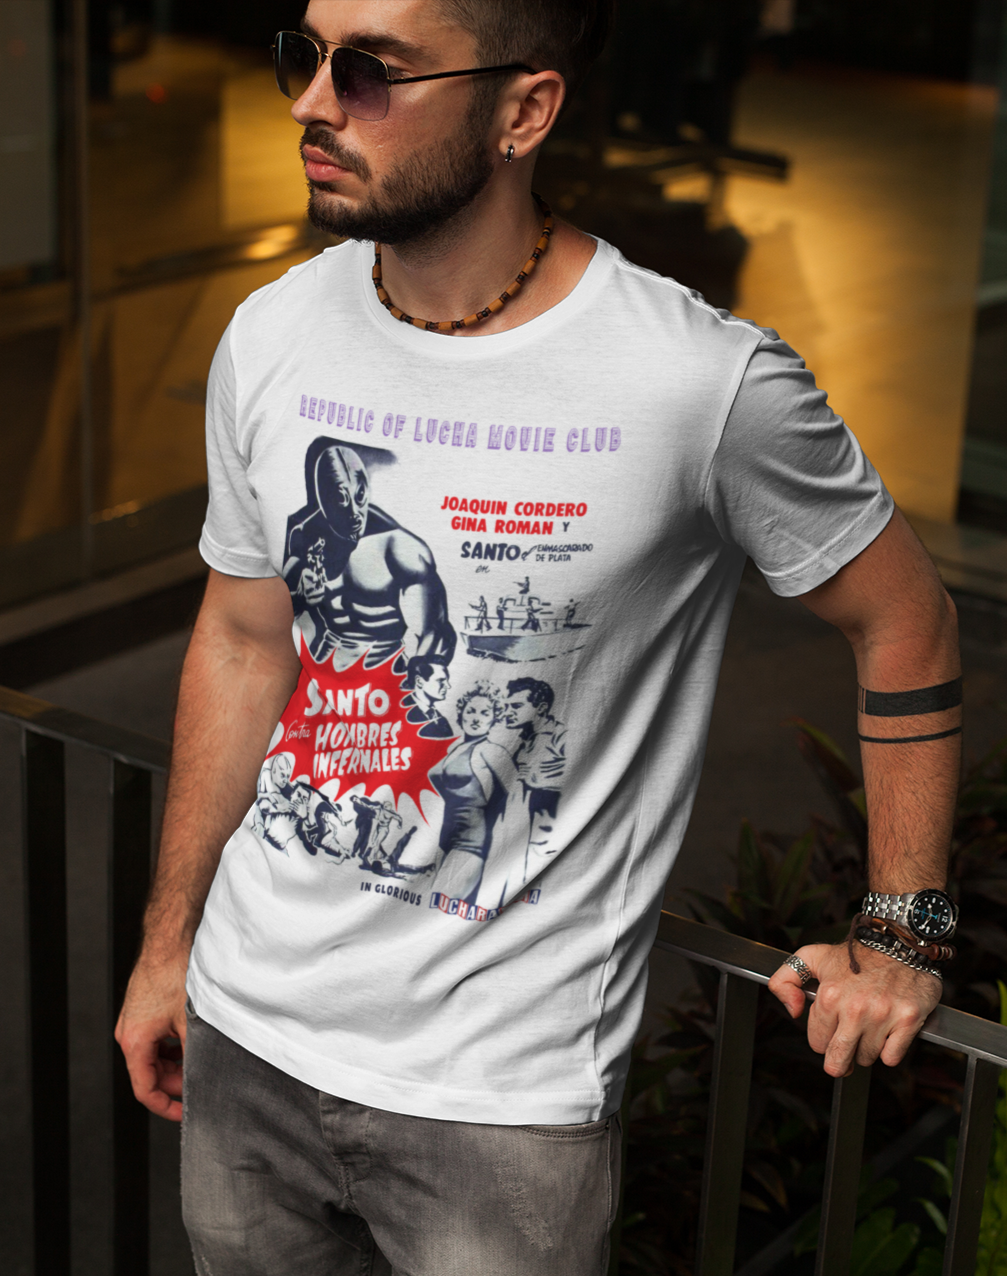 Lucha Movie Club: "SANTO CONTRA LOS HOMBRES INFERNALES"  t-shirt